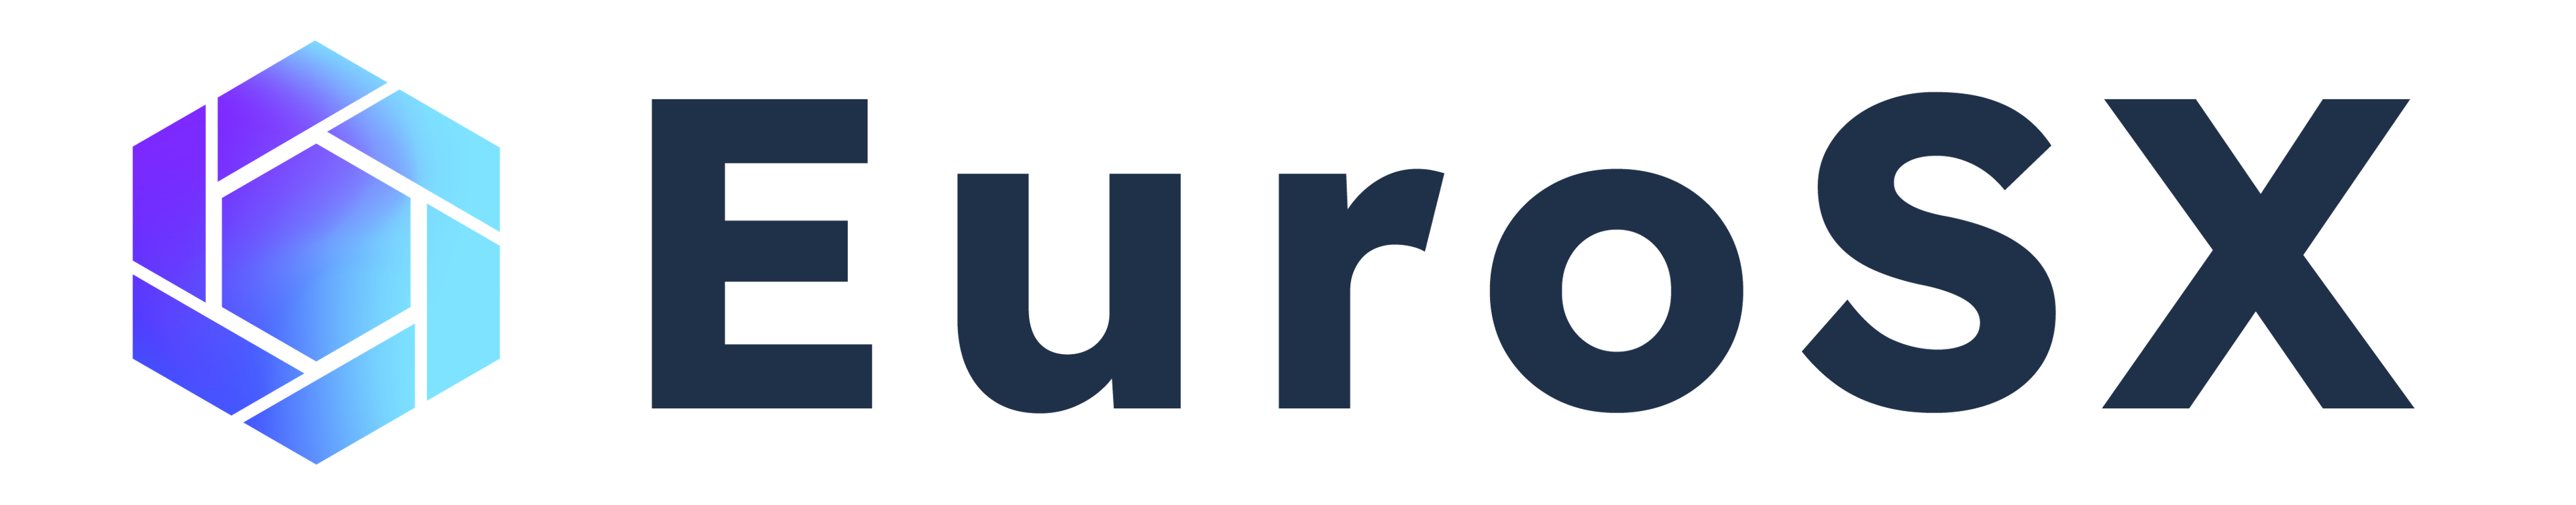 Brtse Logo